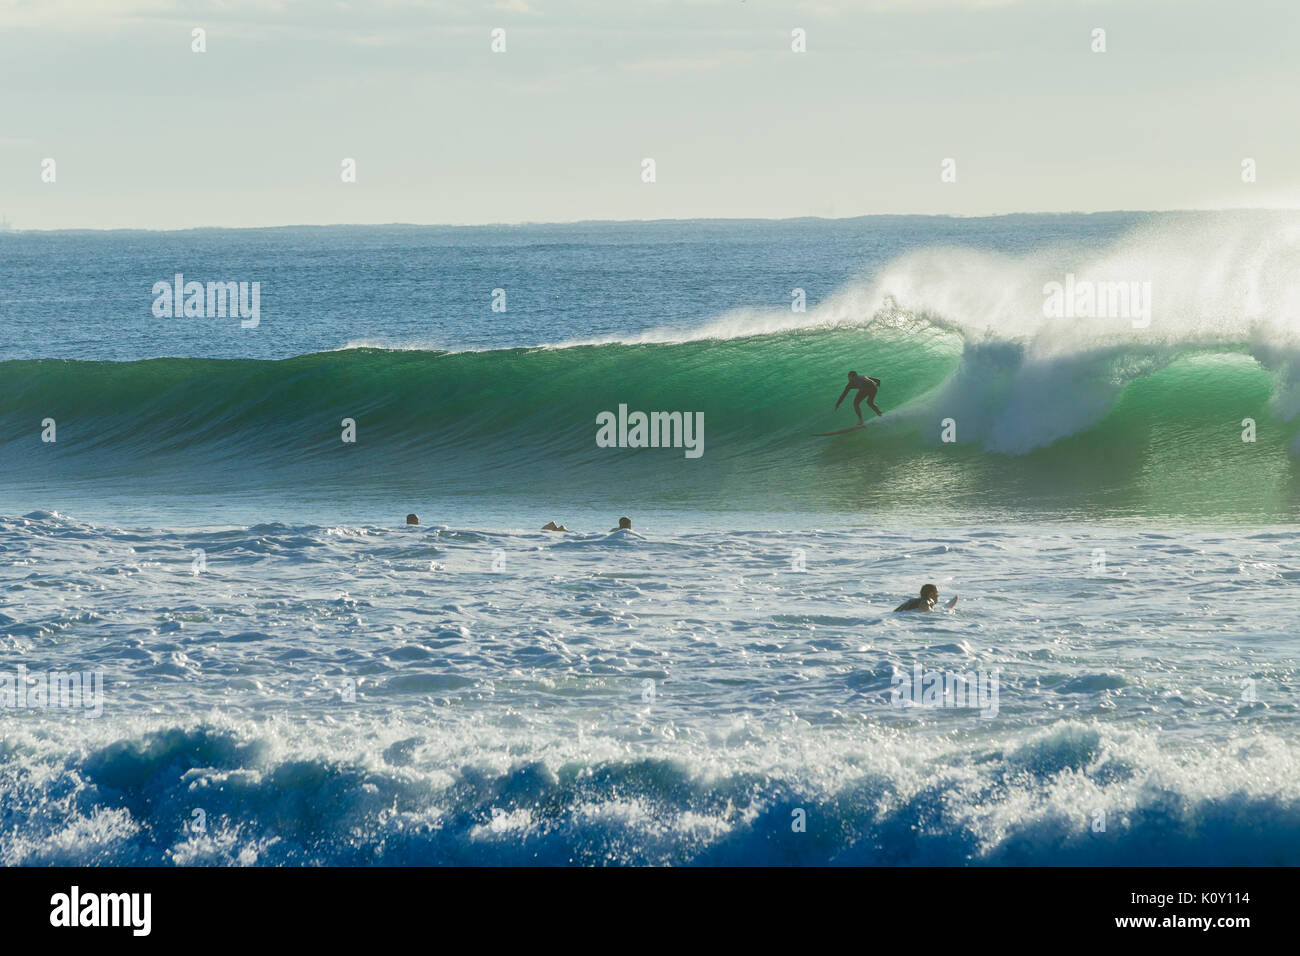 Nicht identifizierte Surfen fang Ocean Wave Aktion Foto Surfer Stockfoto